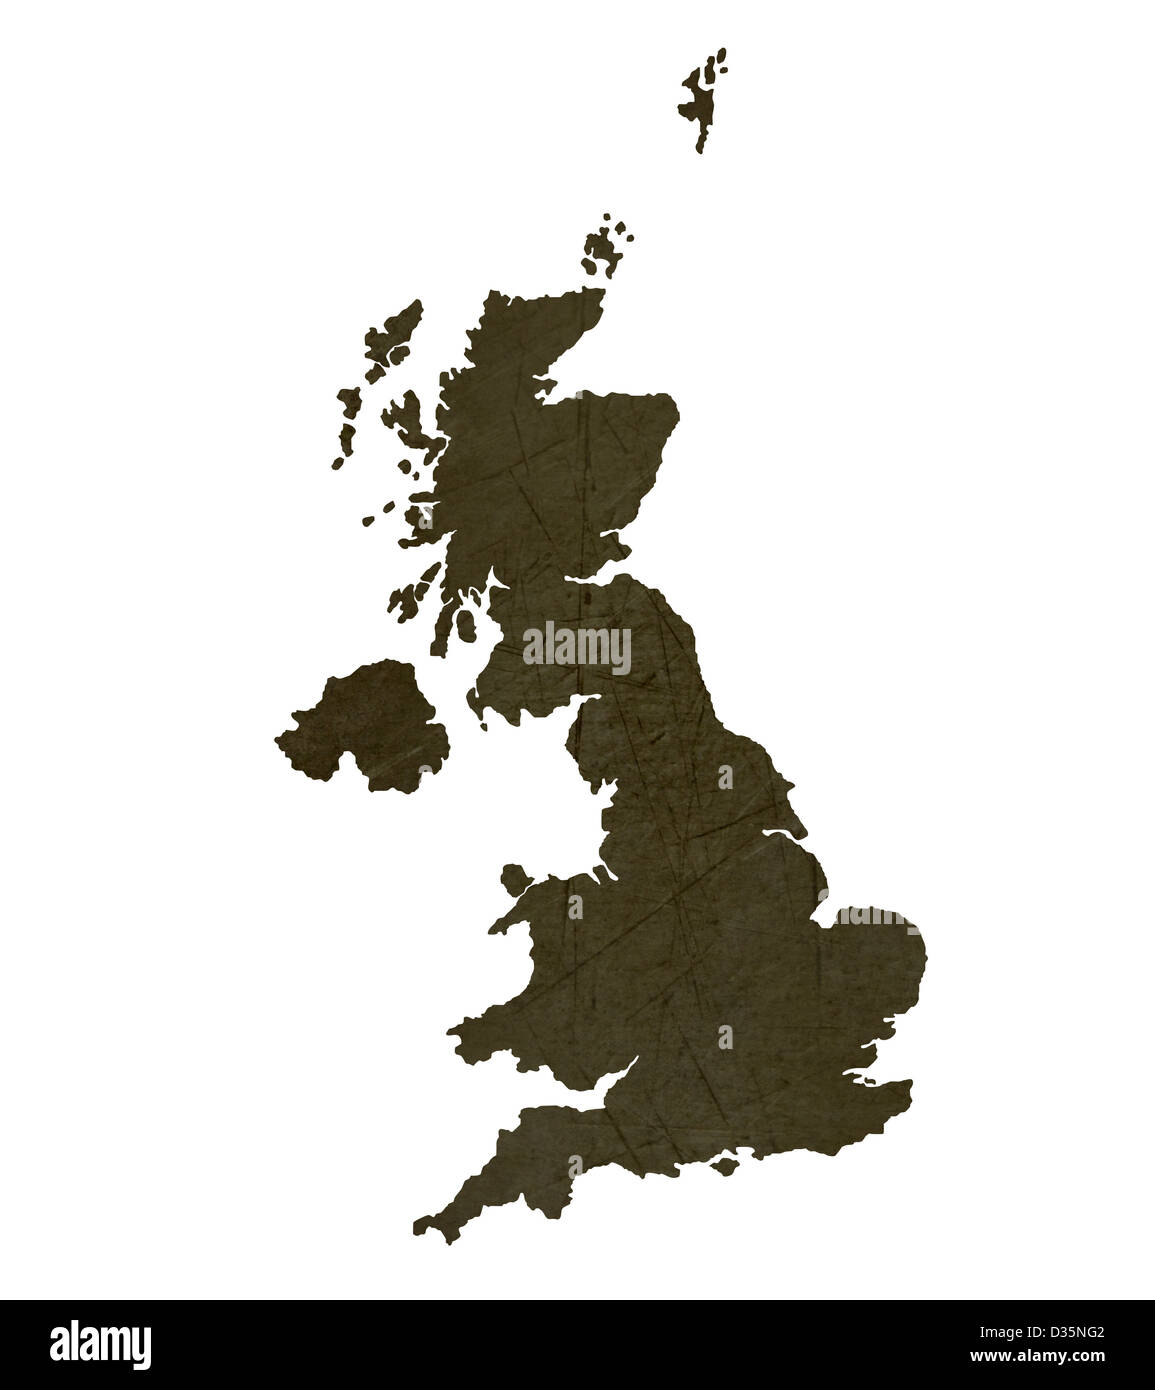 Dunkle Silhouette und strukturierte Karte des Vereinigten Königreichs isoliert auf weißem Hintergrund. Stockfoto